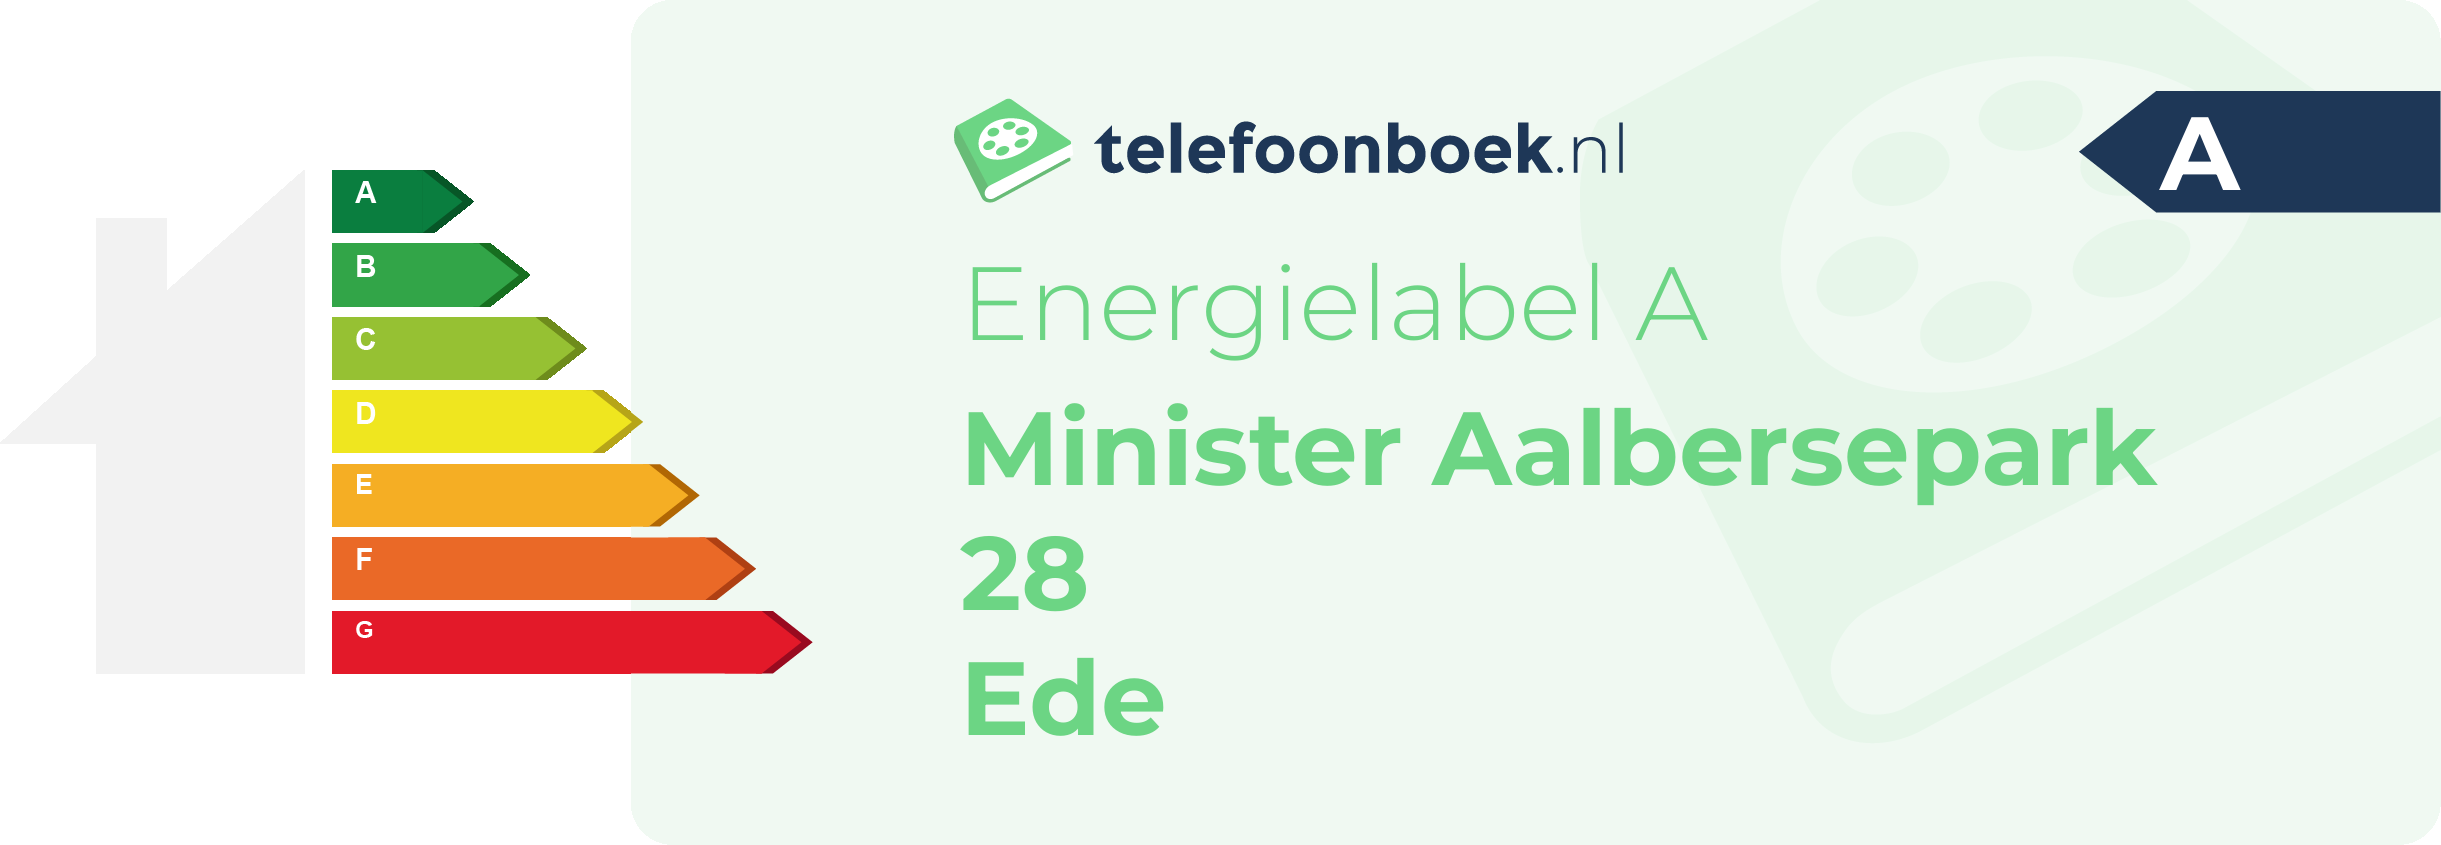 Energielabel Minister Aalbersepark 28 Ede